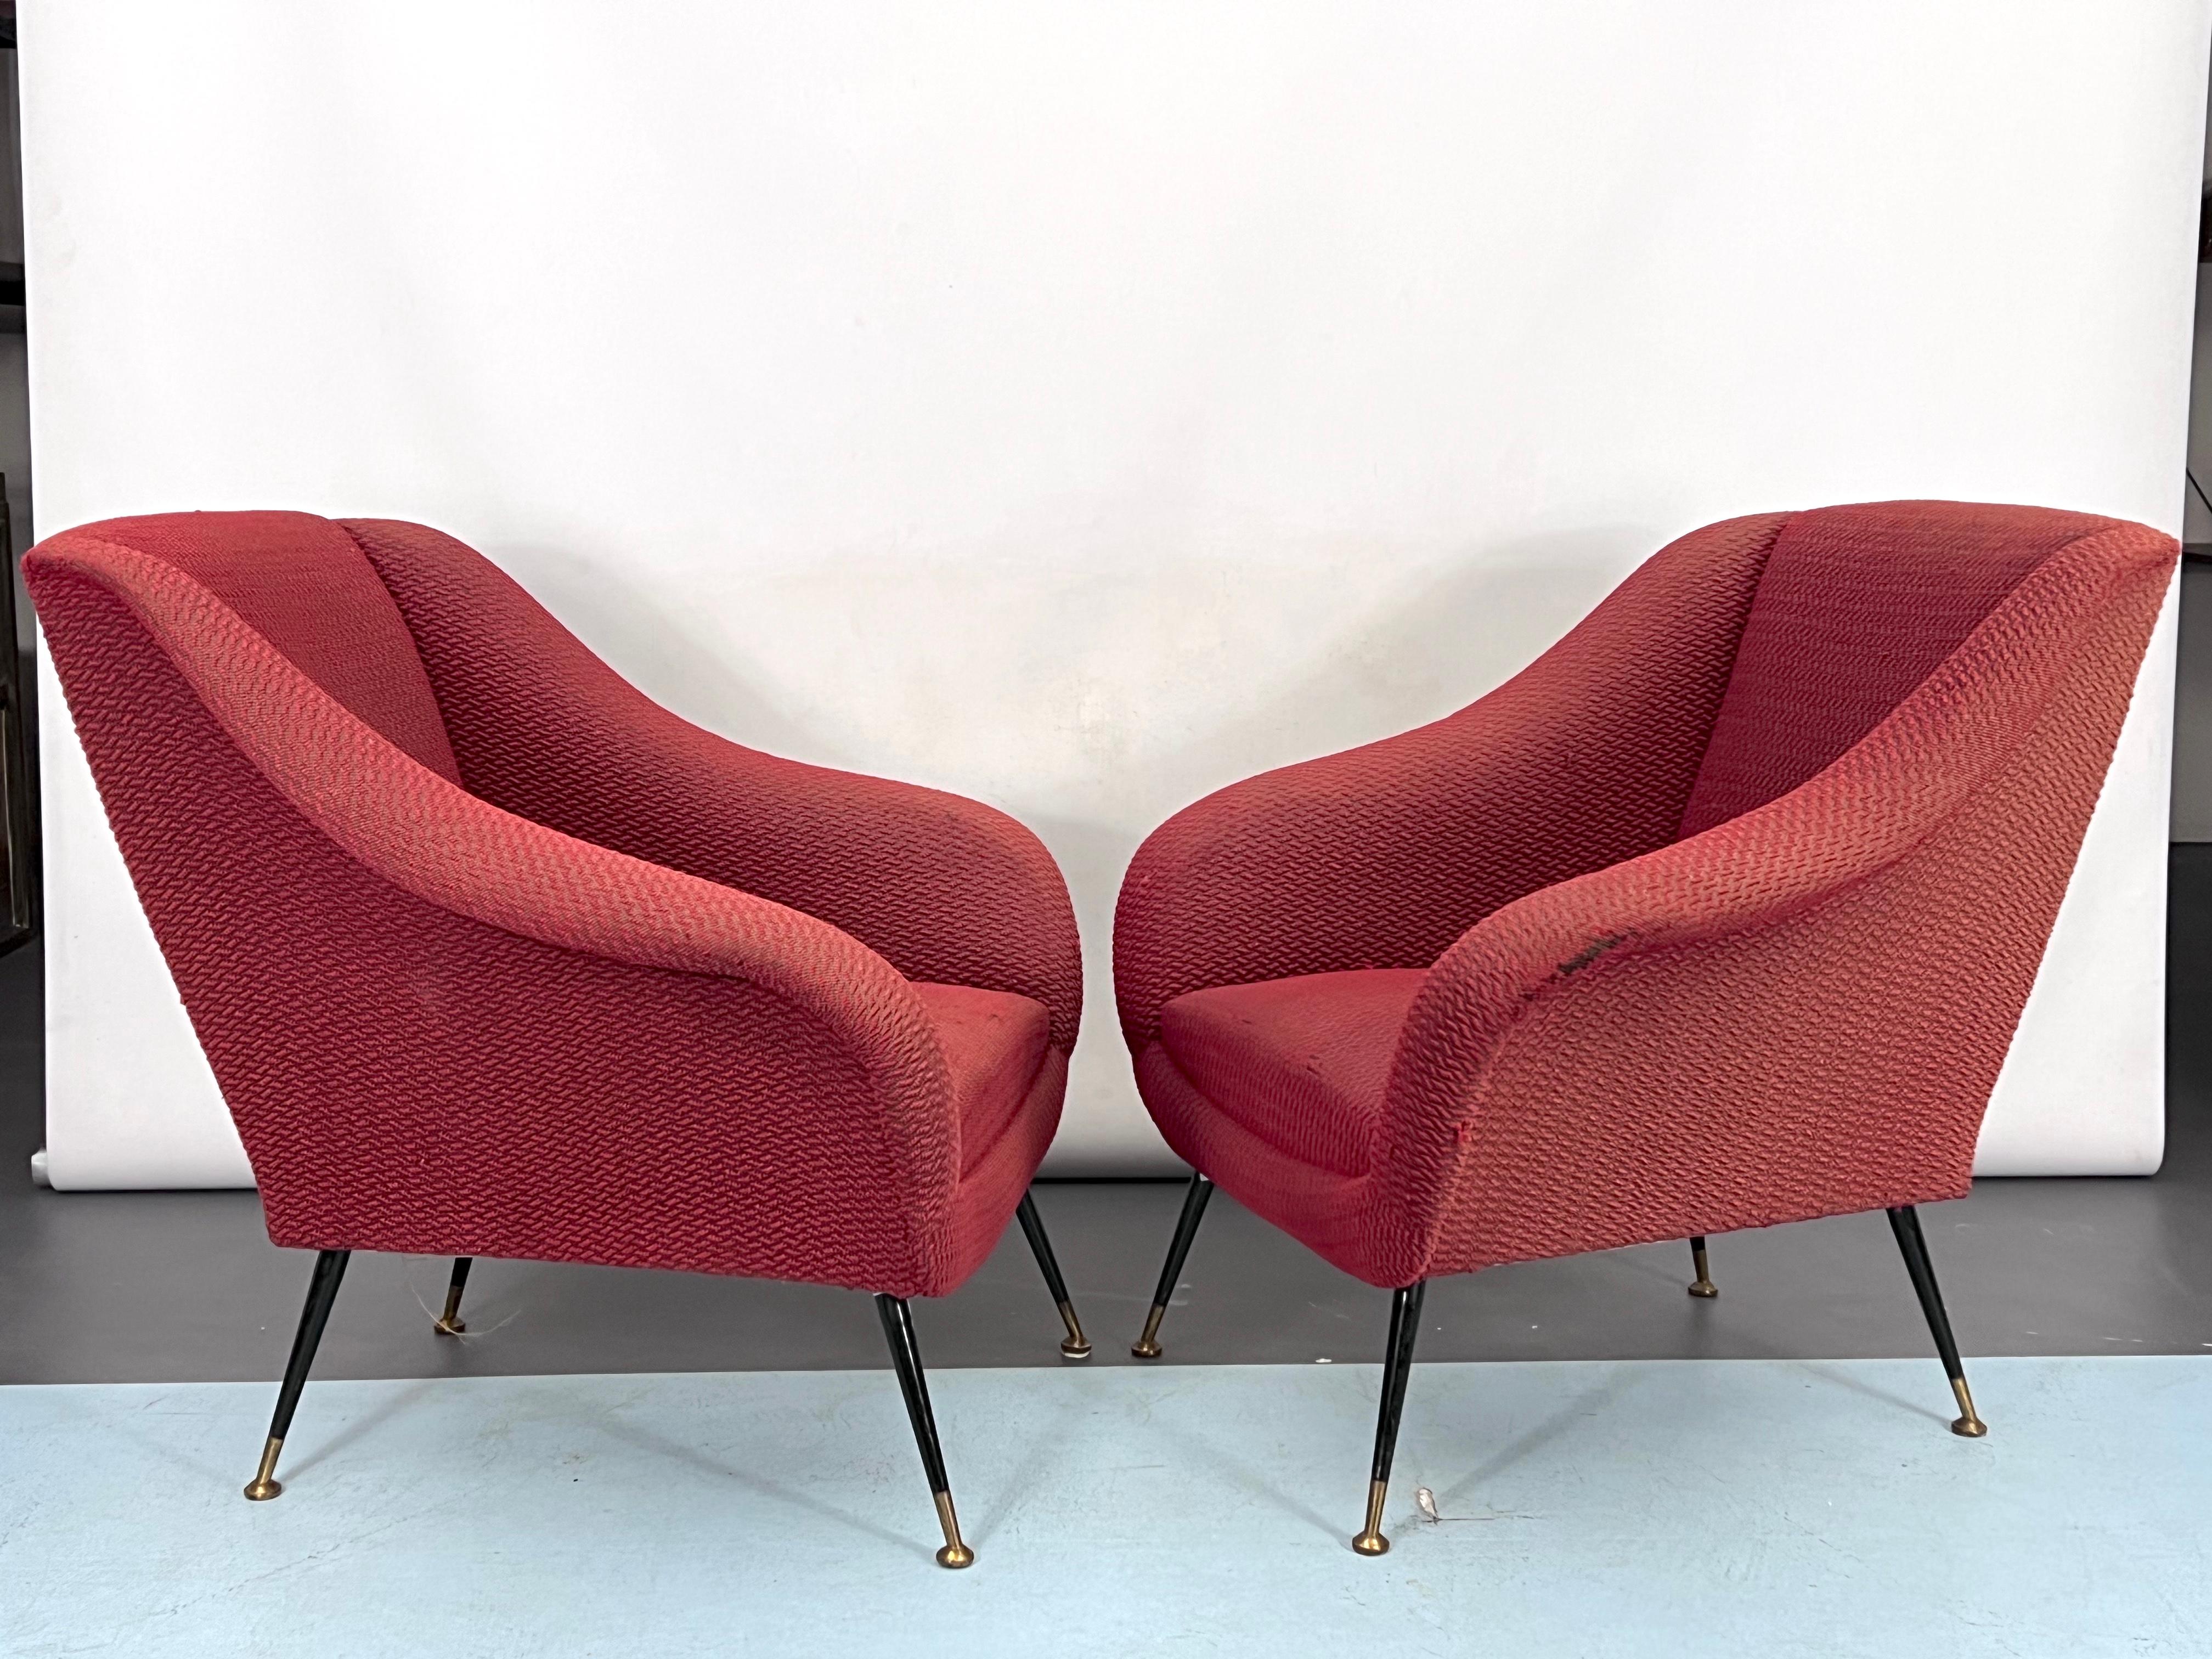 Set aus zwei Sesseln mit Messingfüßen und Originalstoff mit deutlichen Alters- und Gebrauchsspuren und einigen Rissen. Entworfen von Gigi Radice und in den 50er Jahren in Italien hergestellt.